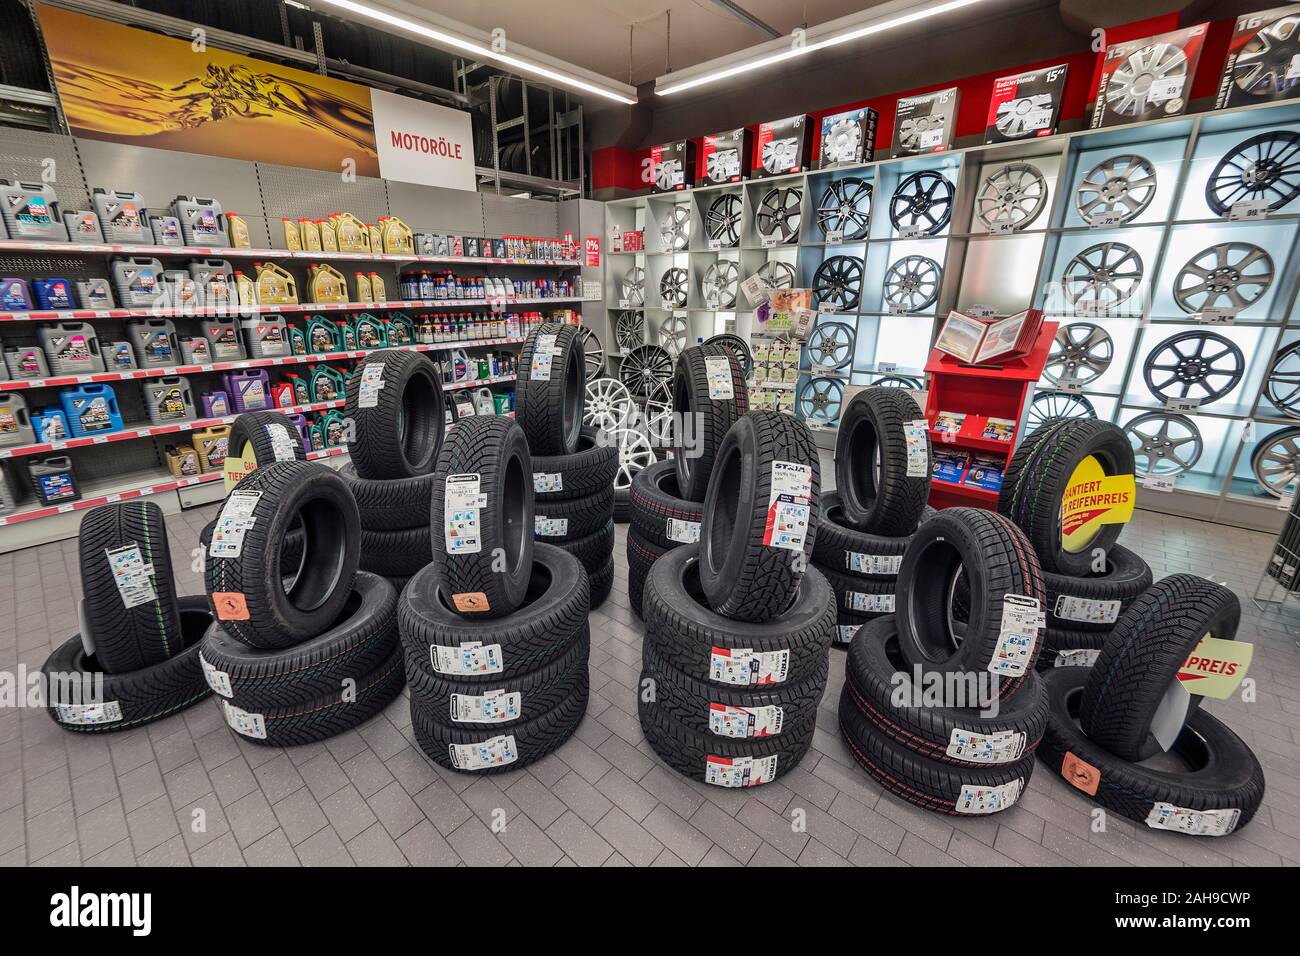 Auto Reifen, Felgen und Motoröl für Verkauf, Bayern, Deutschland  Stockfotografie - Alamy